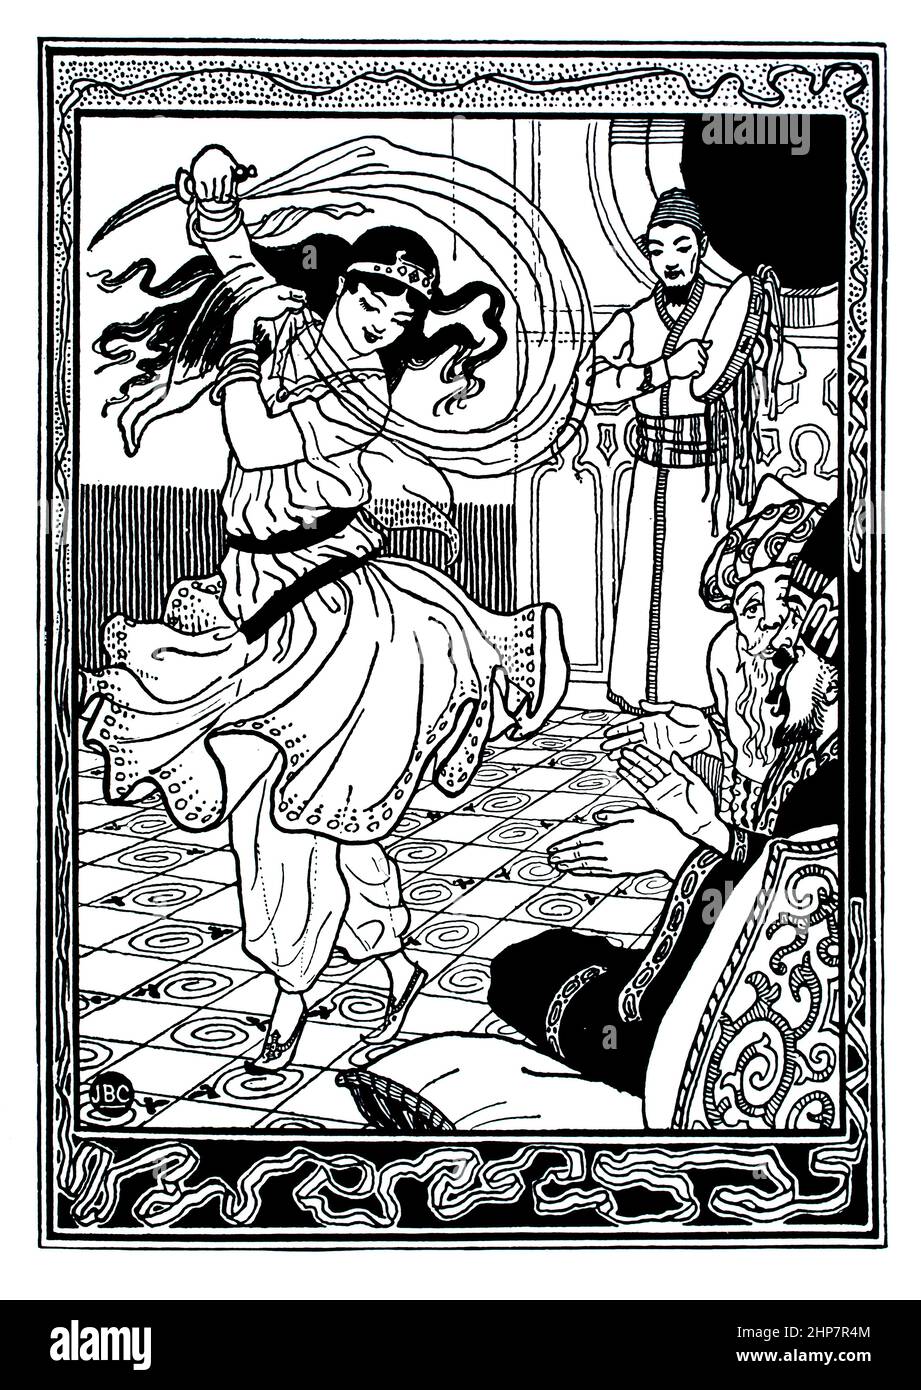 Danseur dans le Harem exotique, 1896 Ali Baba illustration par J B Clark de Sindbad le Sailor et Ali Baba et les quarante Thieves publié par Lawrence et B Banque D'Images